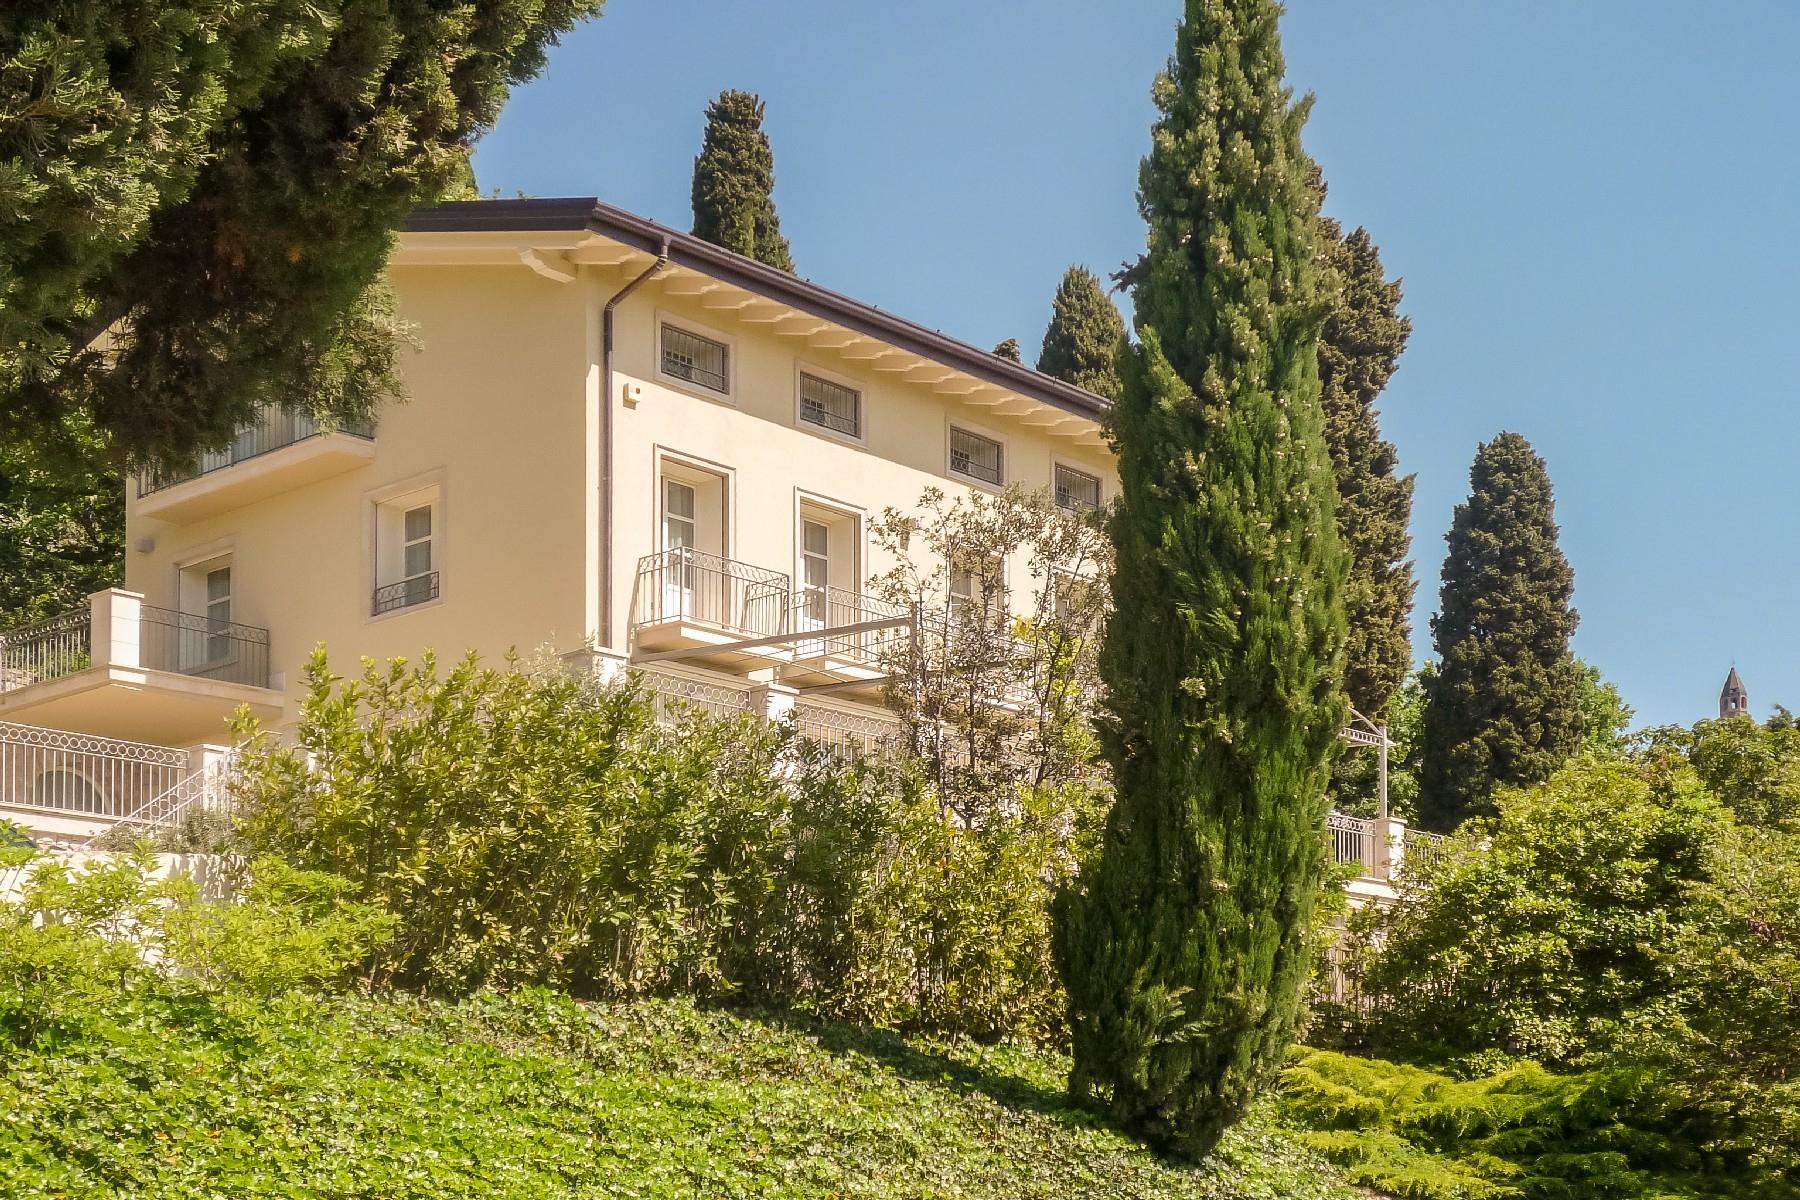 Magnifica villa con parco e piscina sui colli di Bergamo - 5